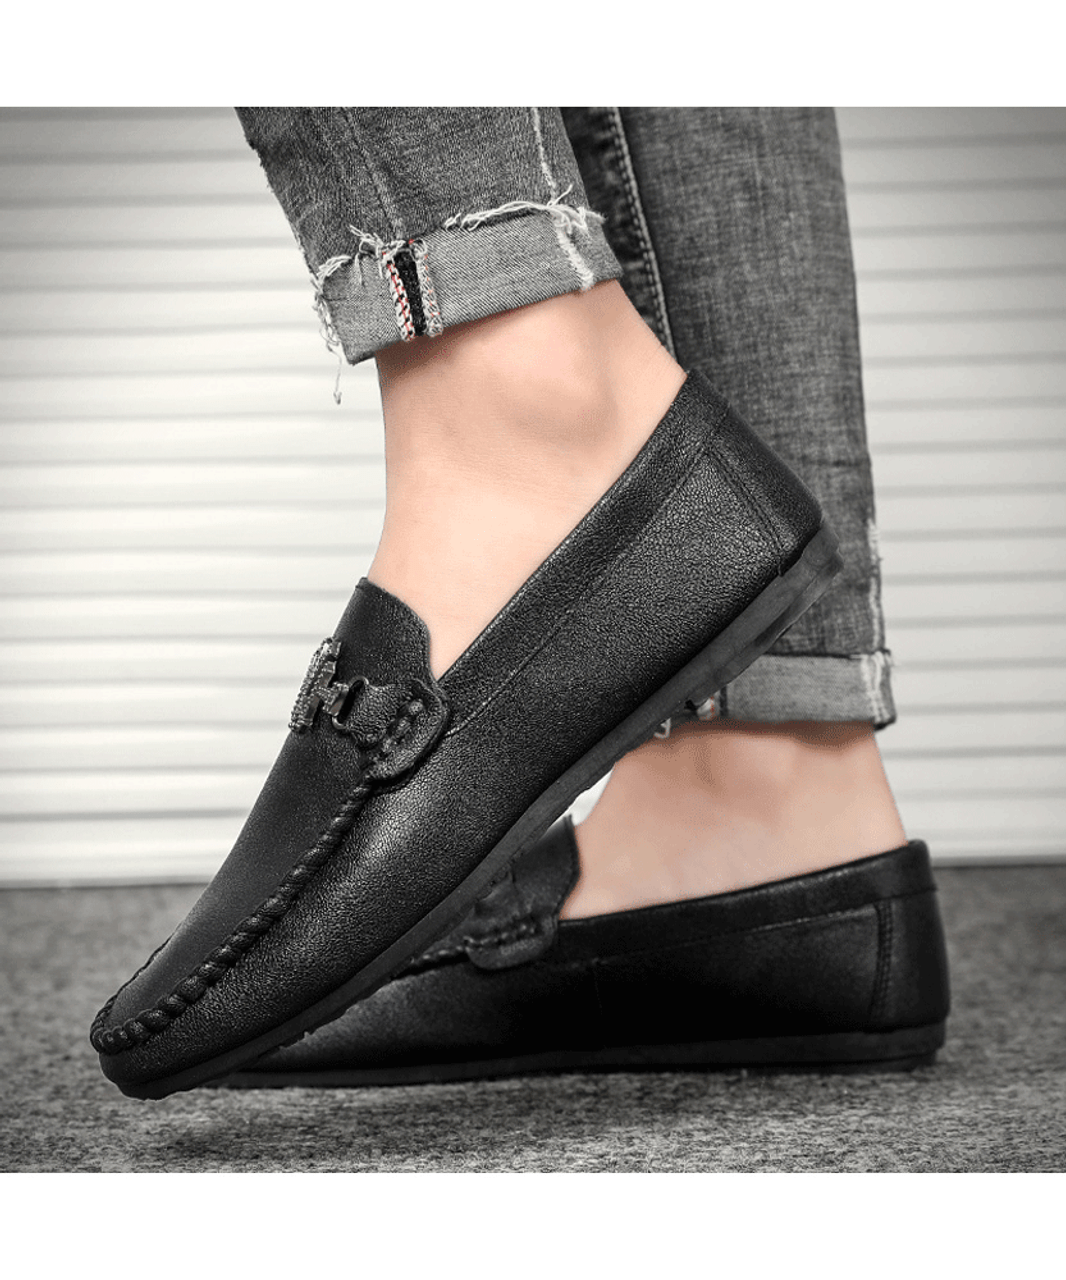 Black N Y buckle on vamp leather slip on shoe loafer | Mens shoe ...